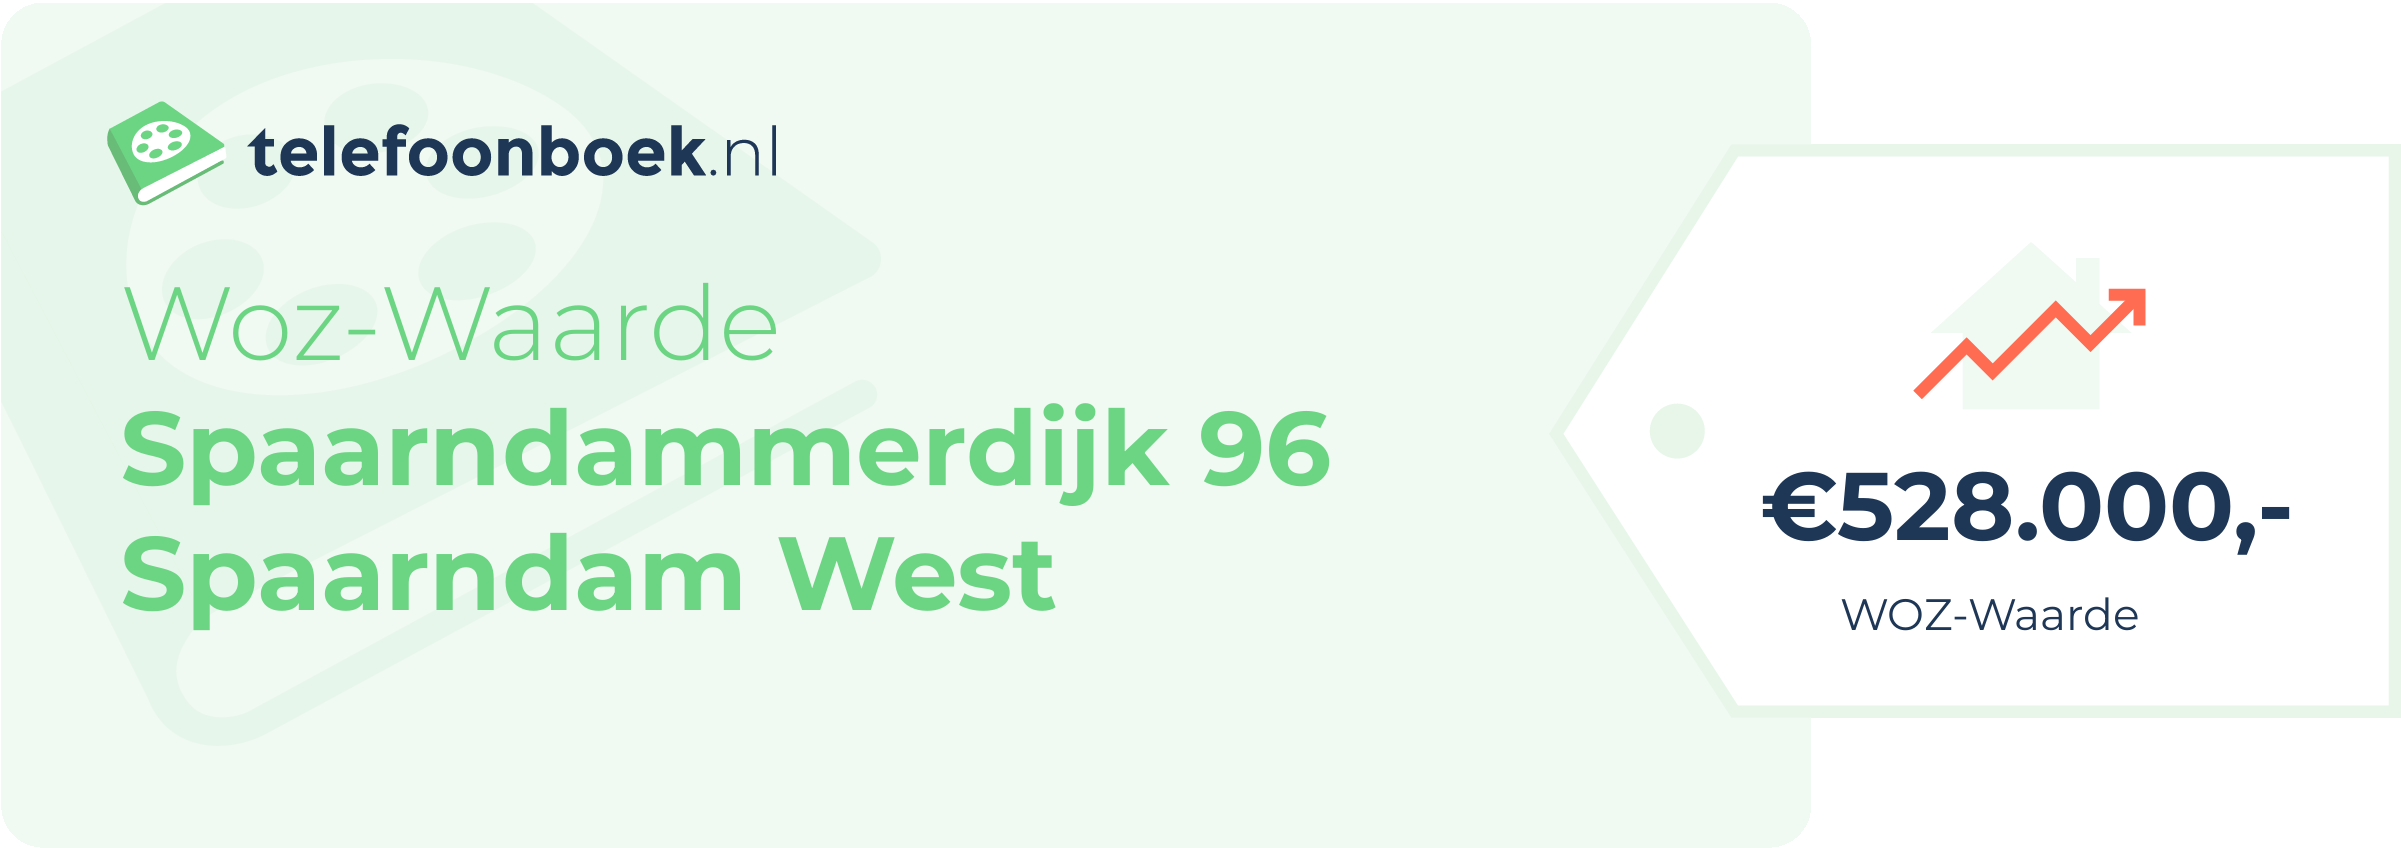 WOZ-waarde Spaarndammerdijk 96 Spaarndam West